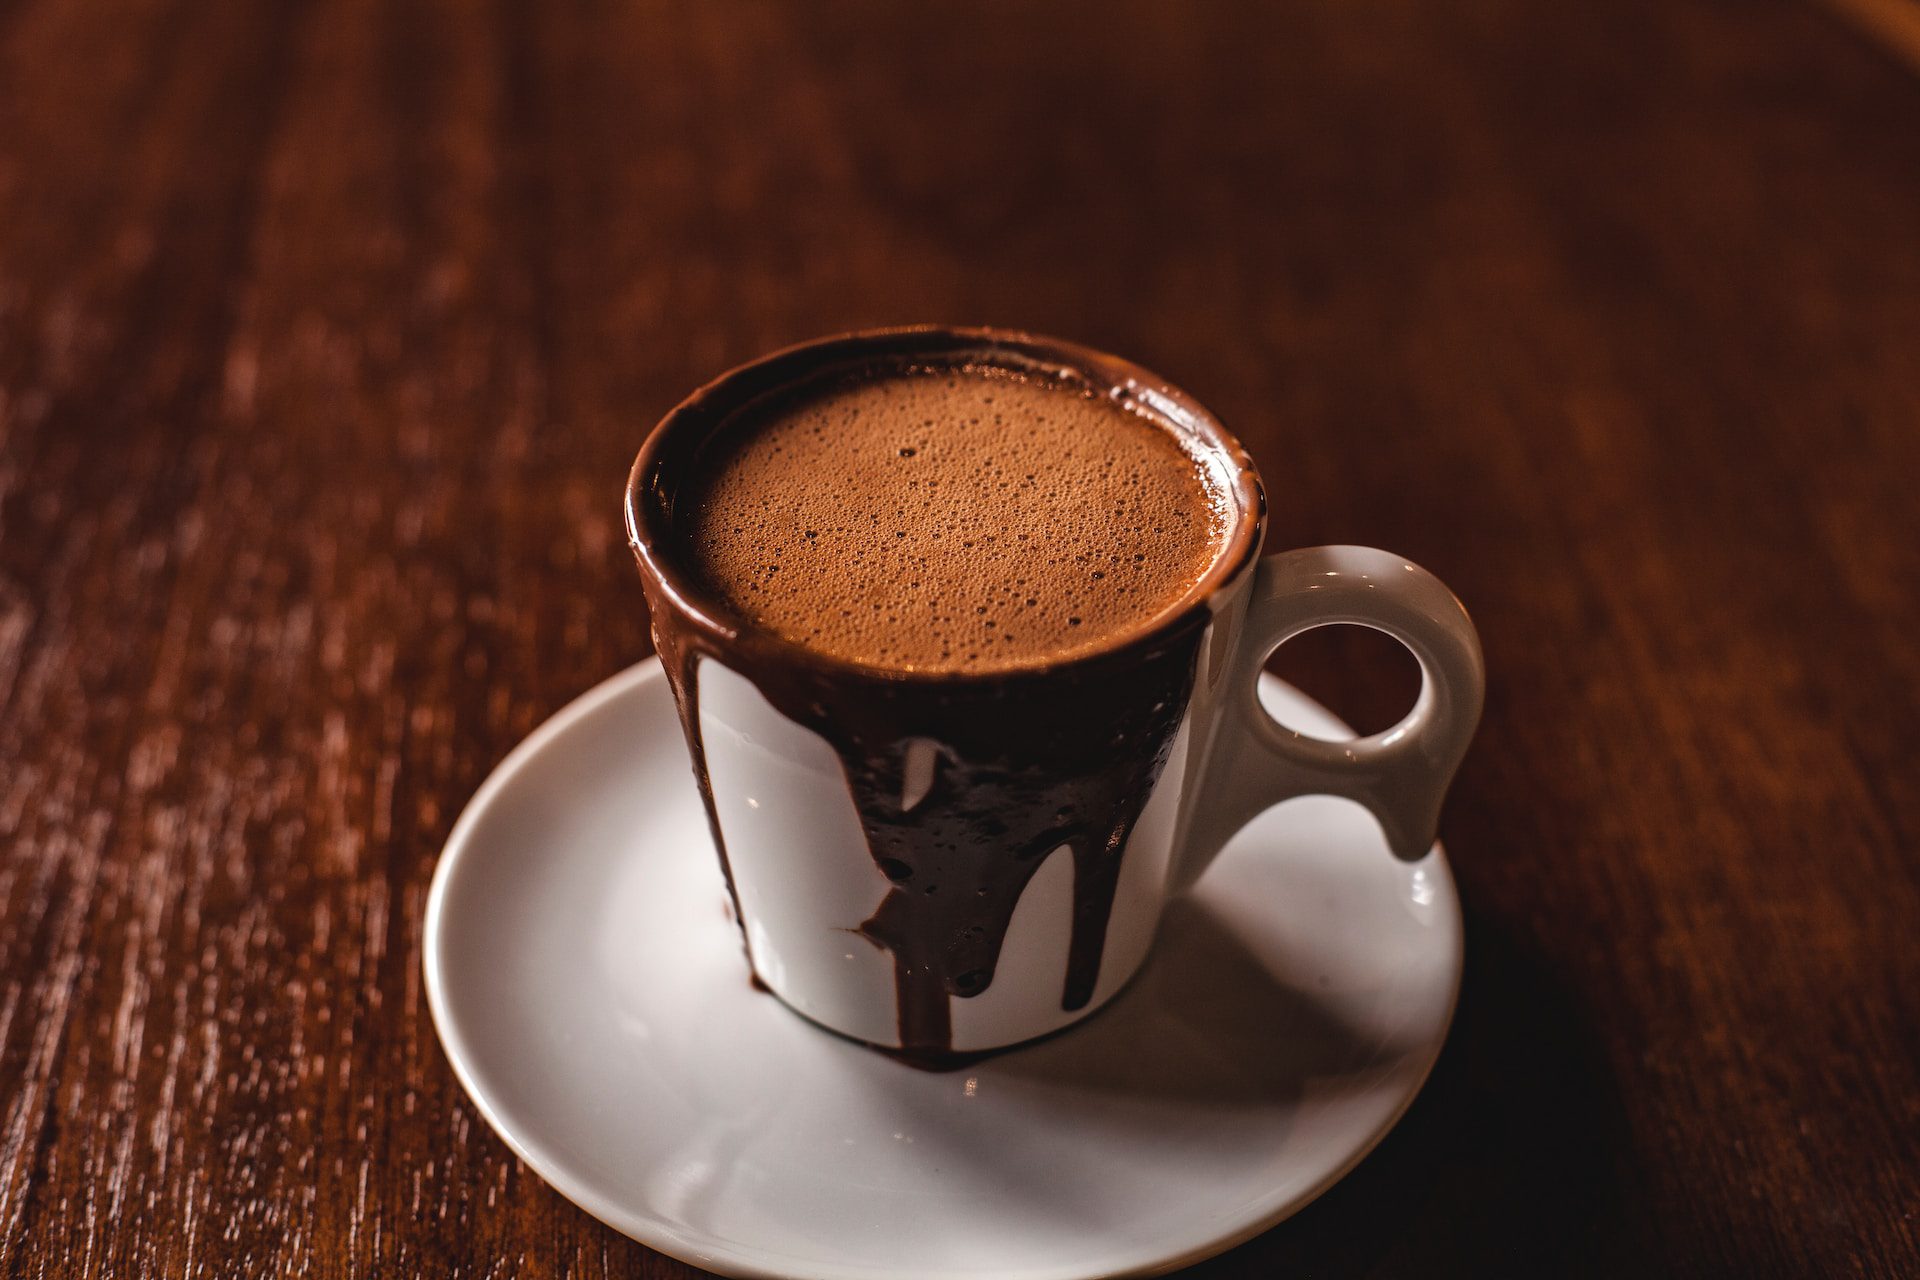 rizicna-kombinacija:-kava-i-cokolada-mogu-imati-pozitivne-ucinke-na-zdravlje,-no-moguca-je-i-jedna-nezeljena-posljedica